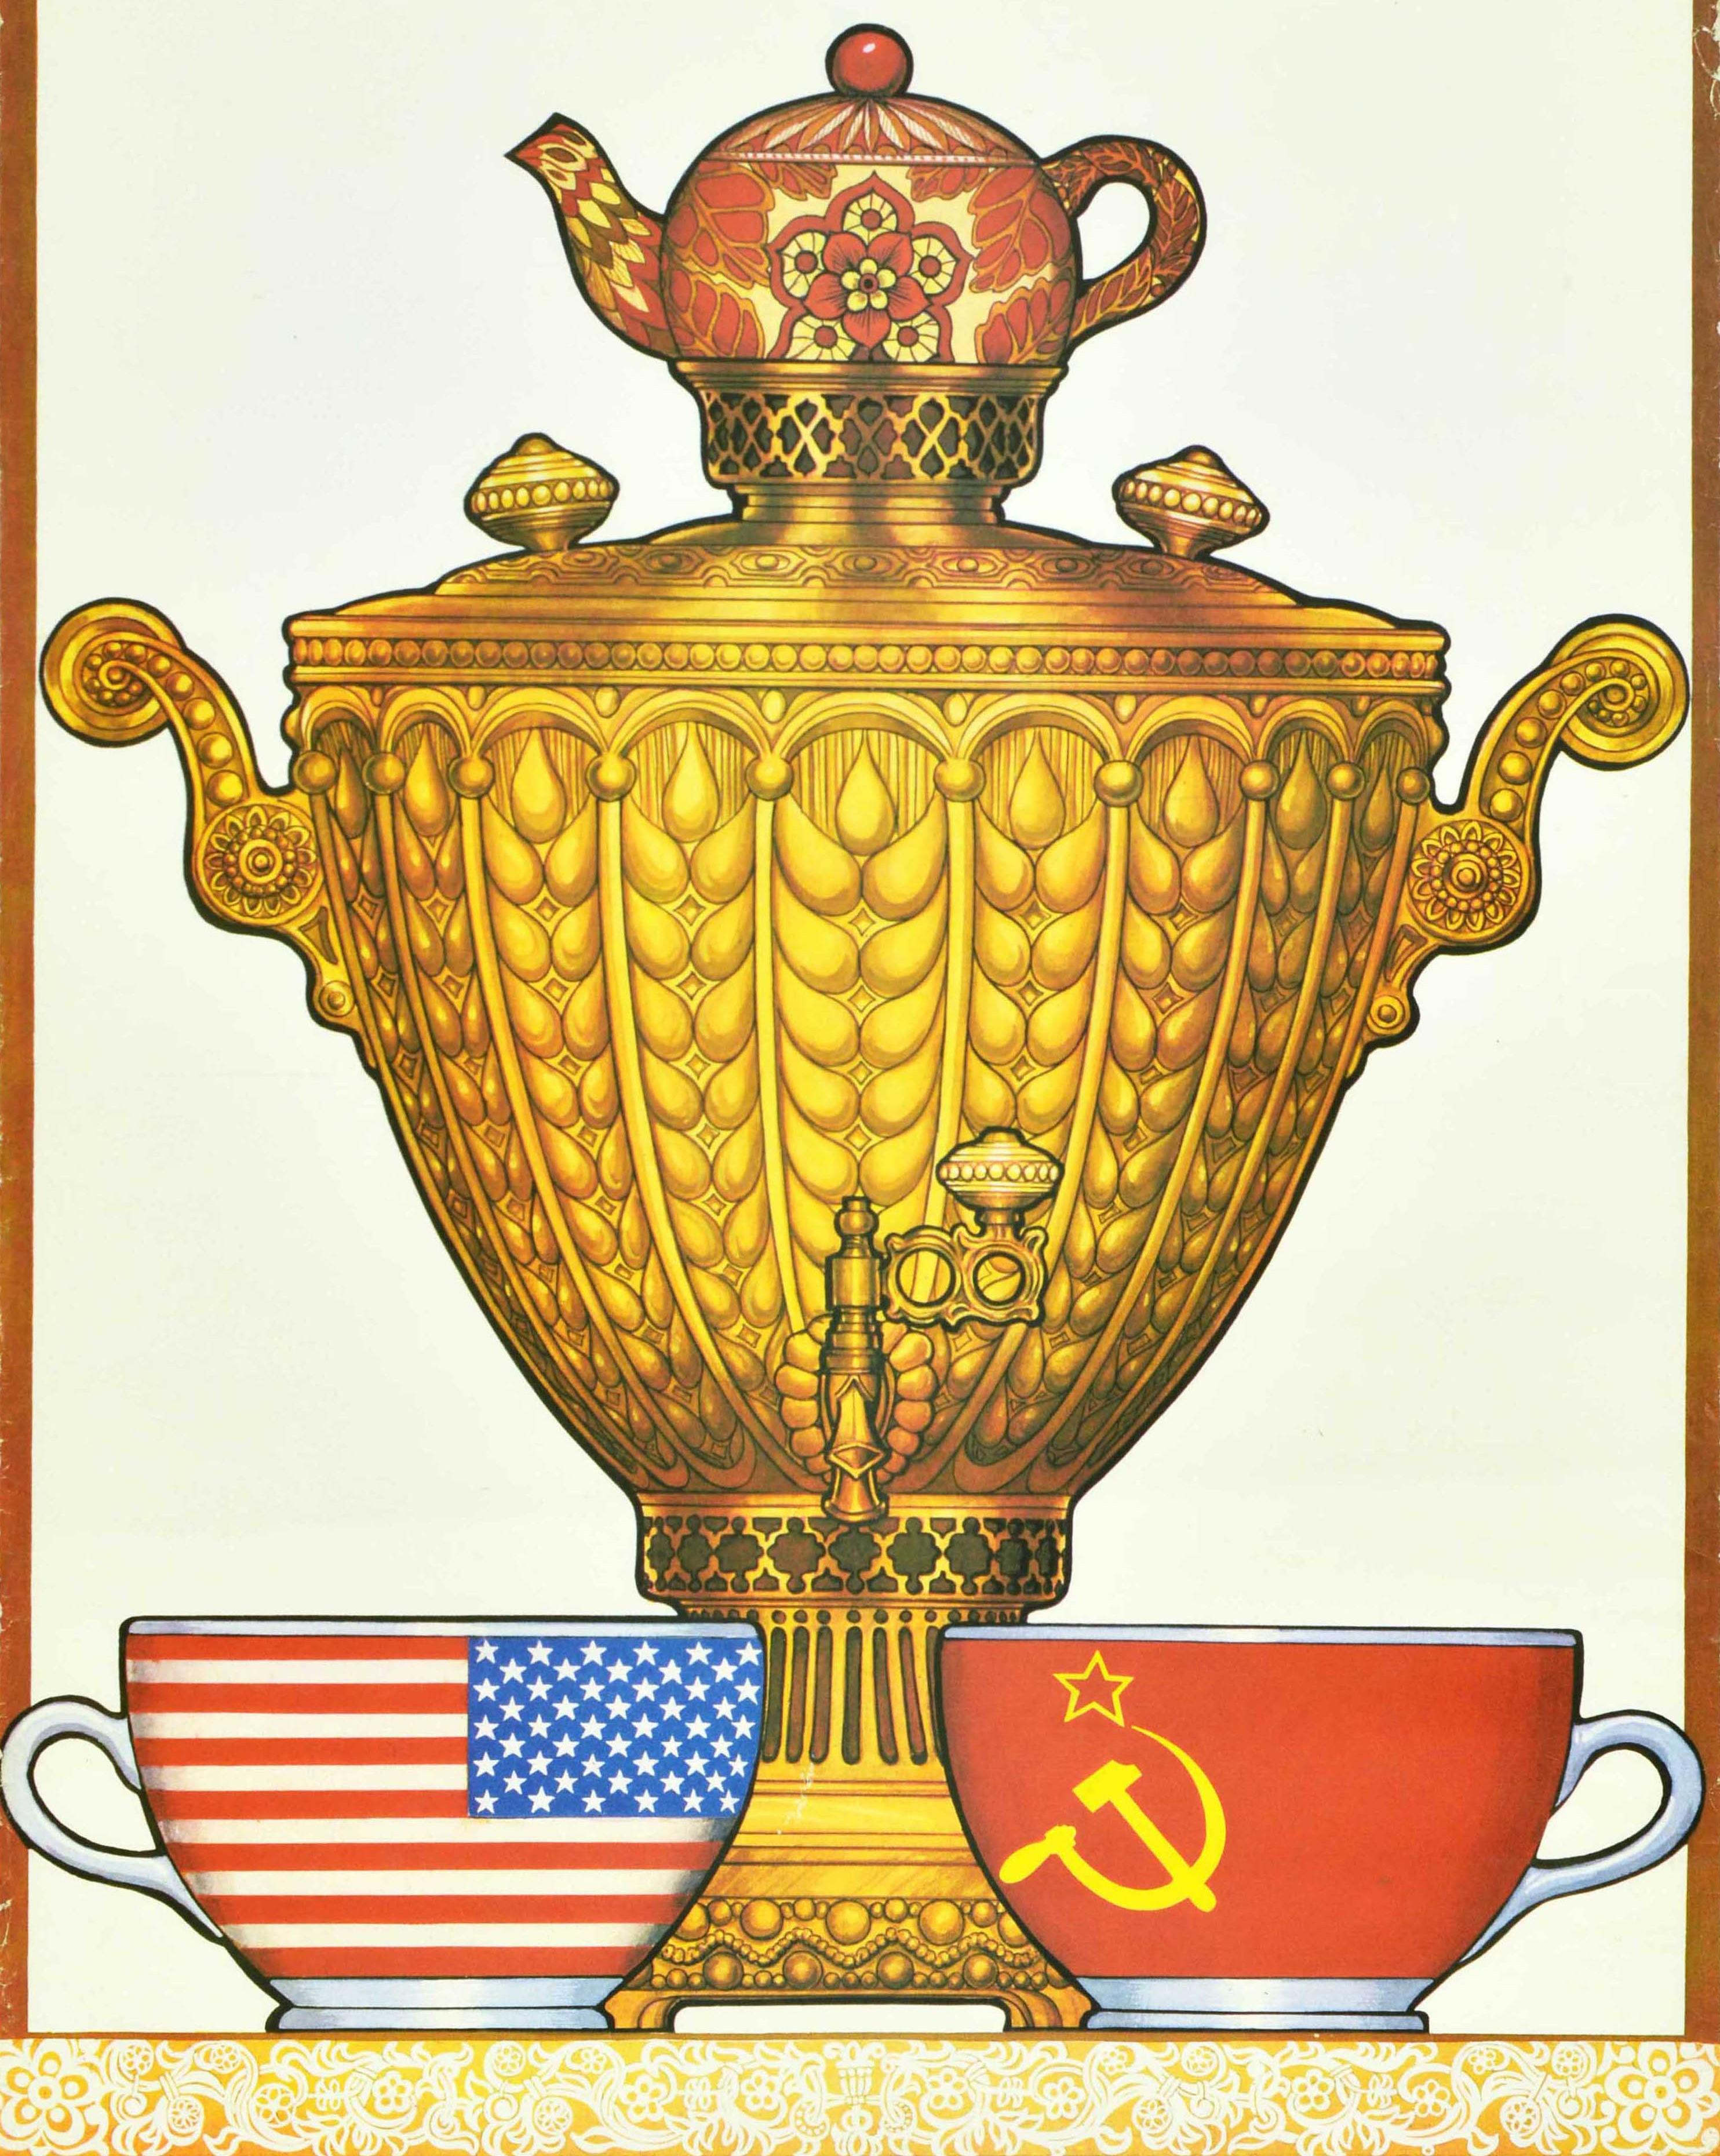 Originales sowjetisches Propagandaposter aus dem Kalten Krieg - Wir werden in Frieden leben! - mit traditioneller Grafik, die einen Samowar mit einer geblümten Teekanne oben und zwei Teetassen auf dem Tischtuch unten zeigt, eine mit einer